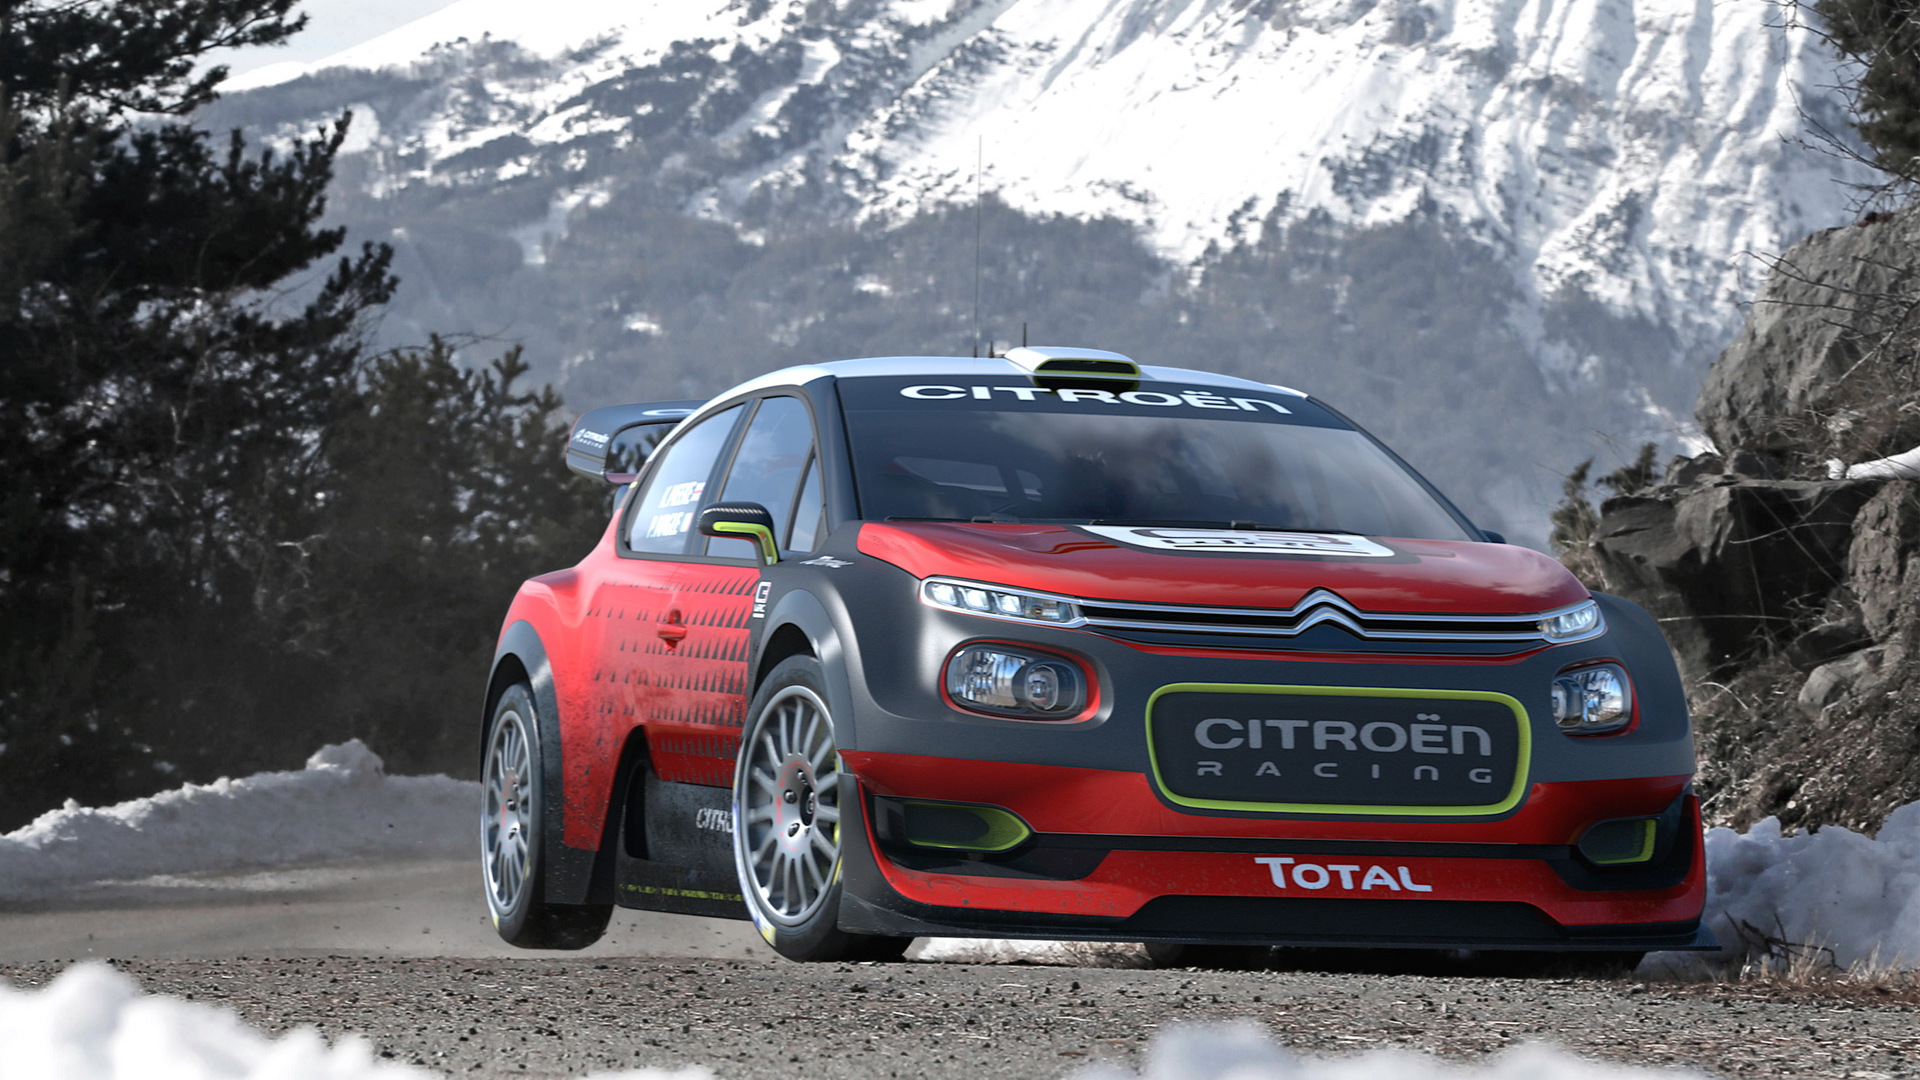 Citroën C3 WRC concept, 2016 Paris auto show